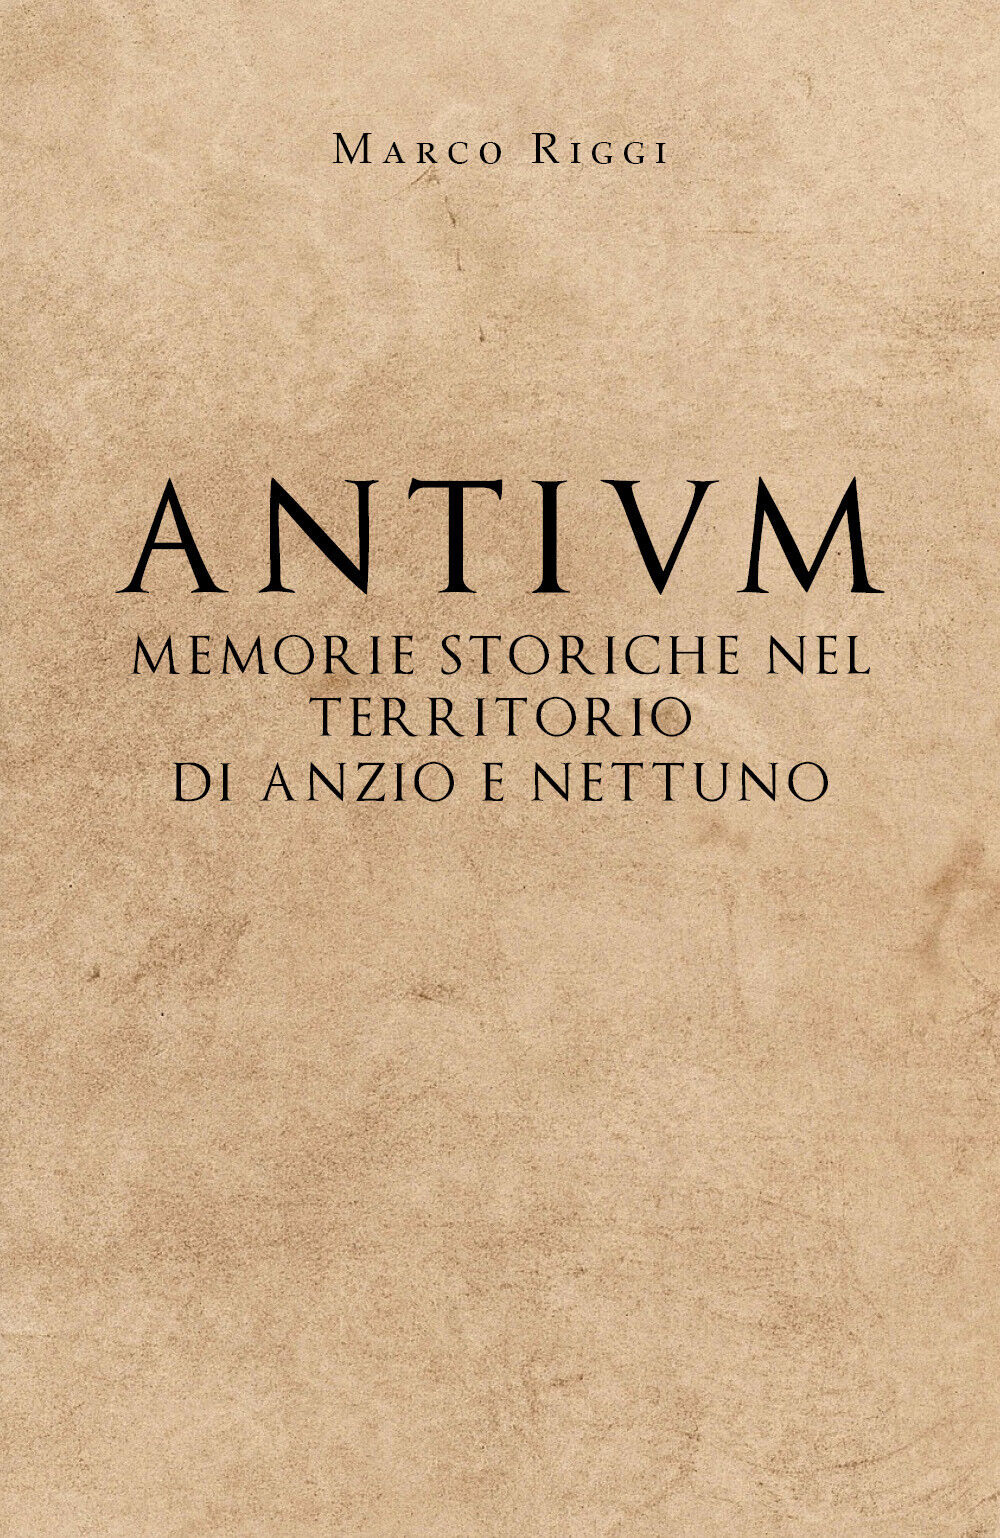 Antium: memorie storiche nel territorio di Anzio e Nettuno - Marco Riggi - P